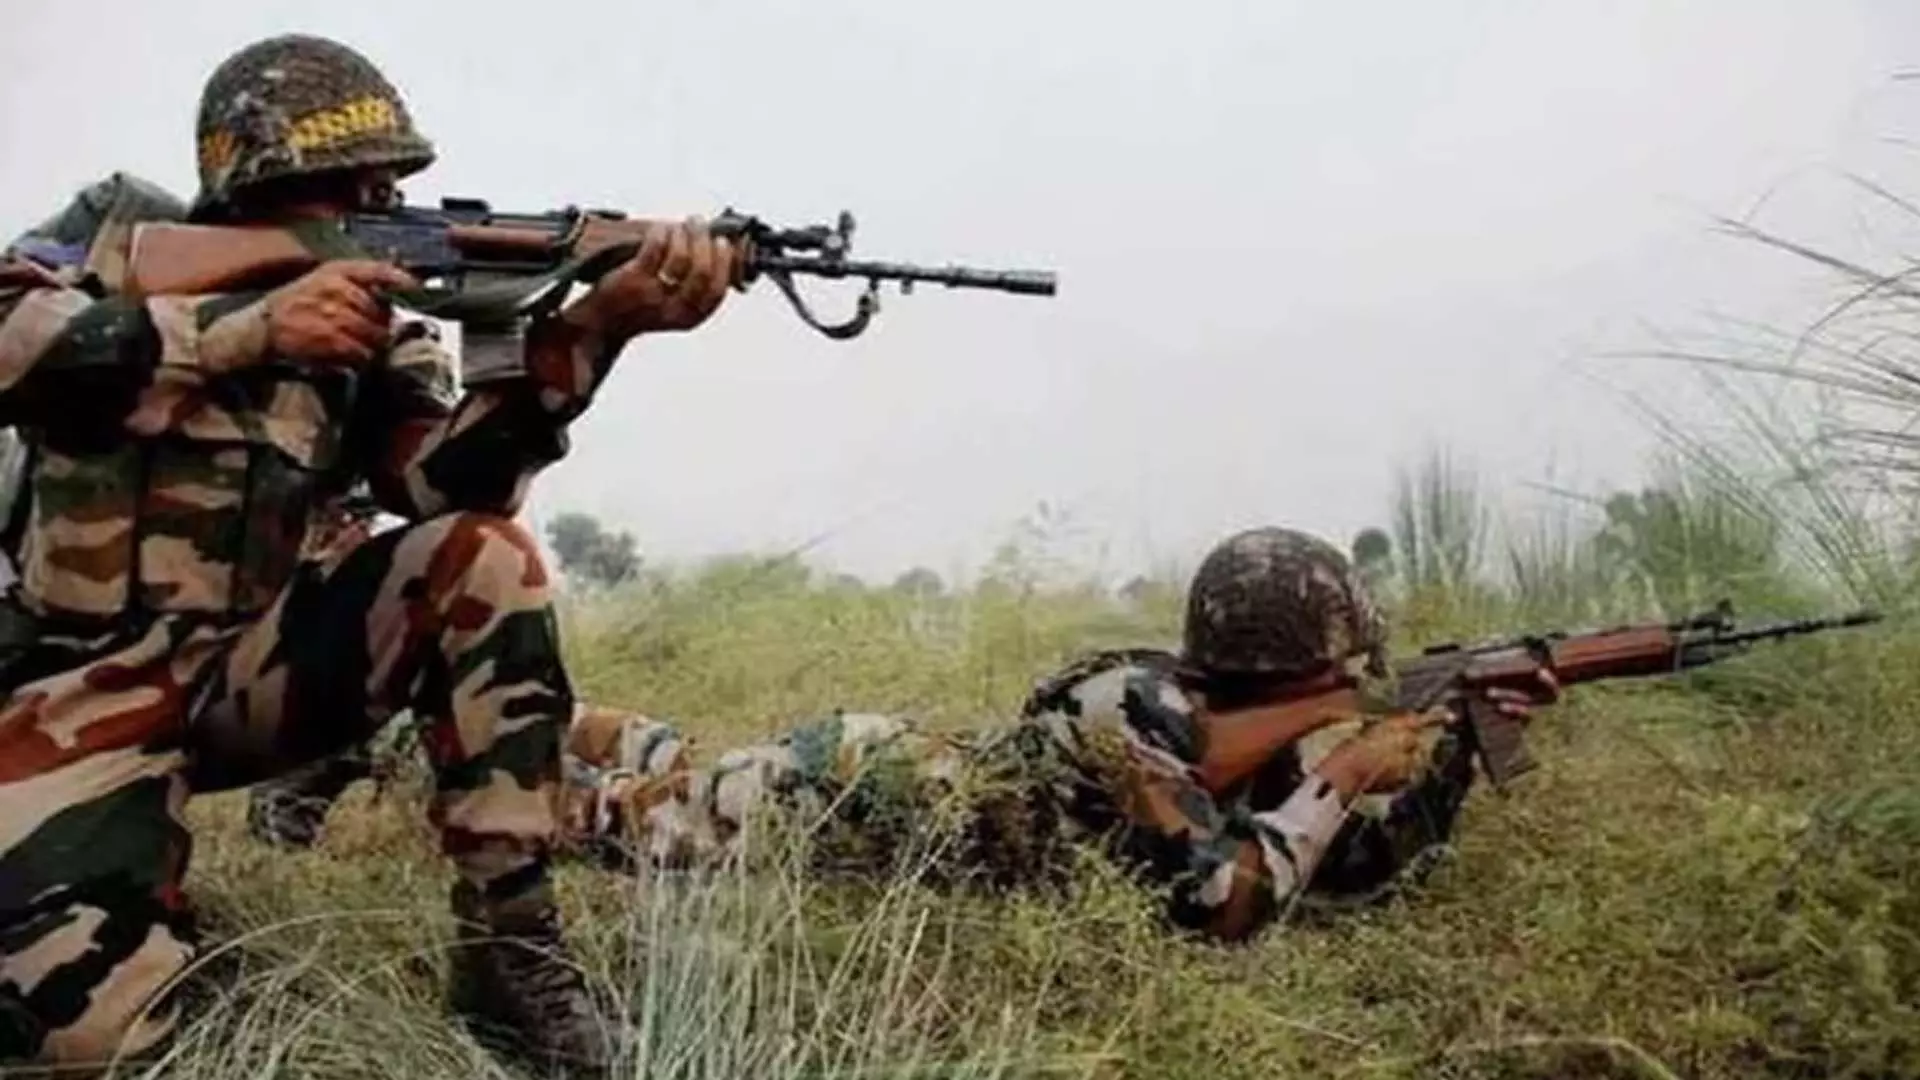 मणिपुर के थौबल जिले में हथियारबंद लोगों ने भारतीय सेना अधिकारी का अपहरण कर लिया